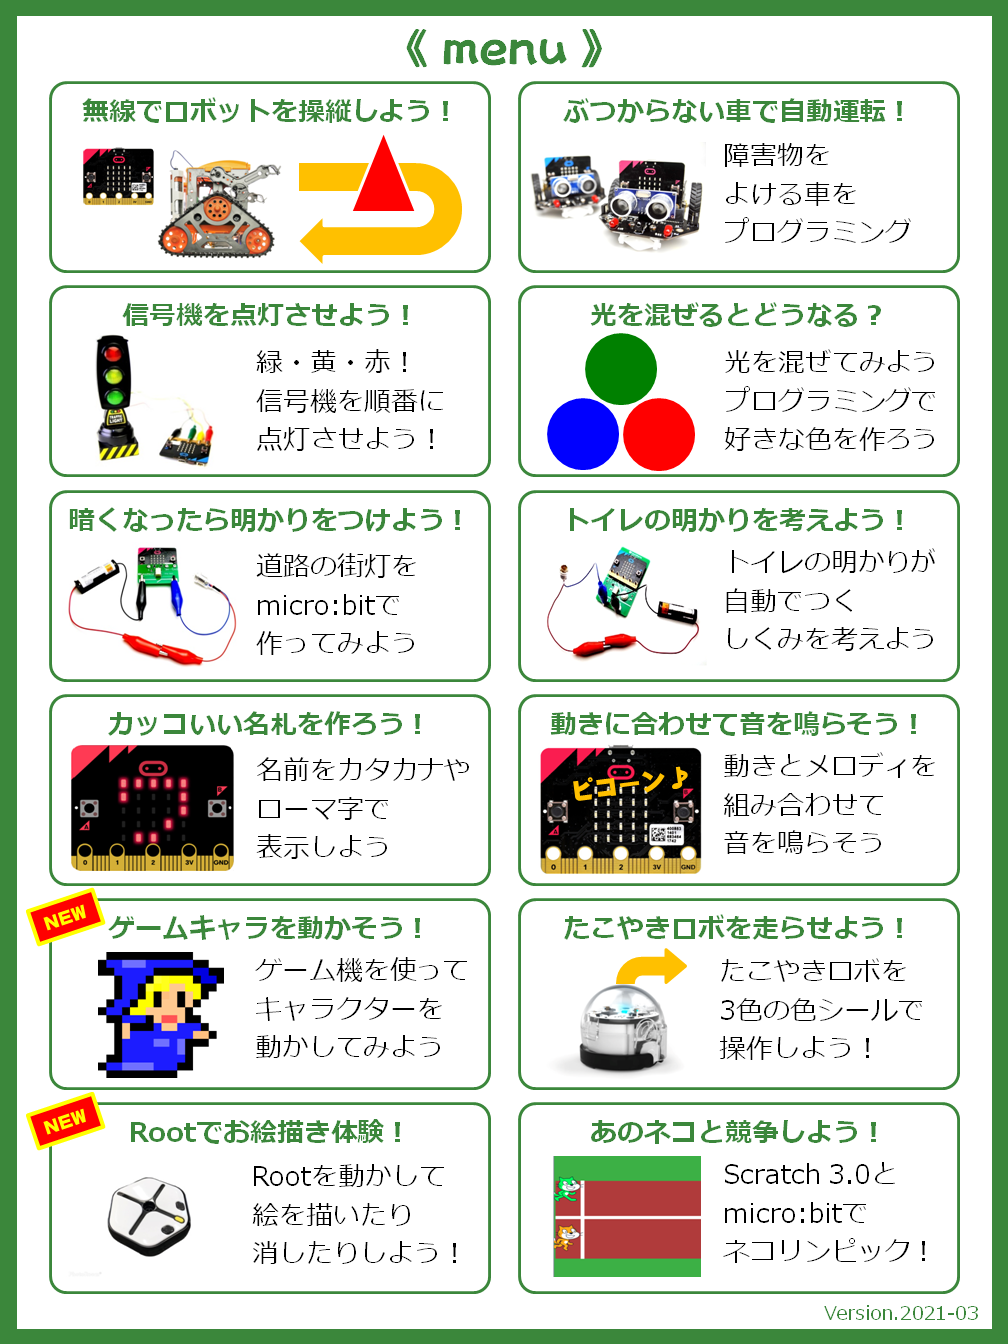 図1-35.「子どもプログラミング喫茶 in 丸亀」のメニュー（2021/3/28）